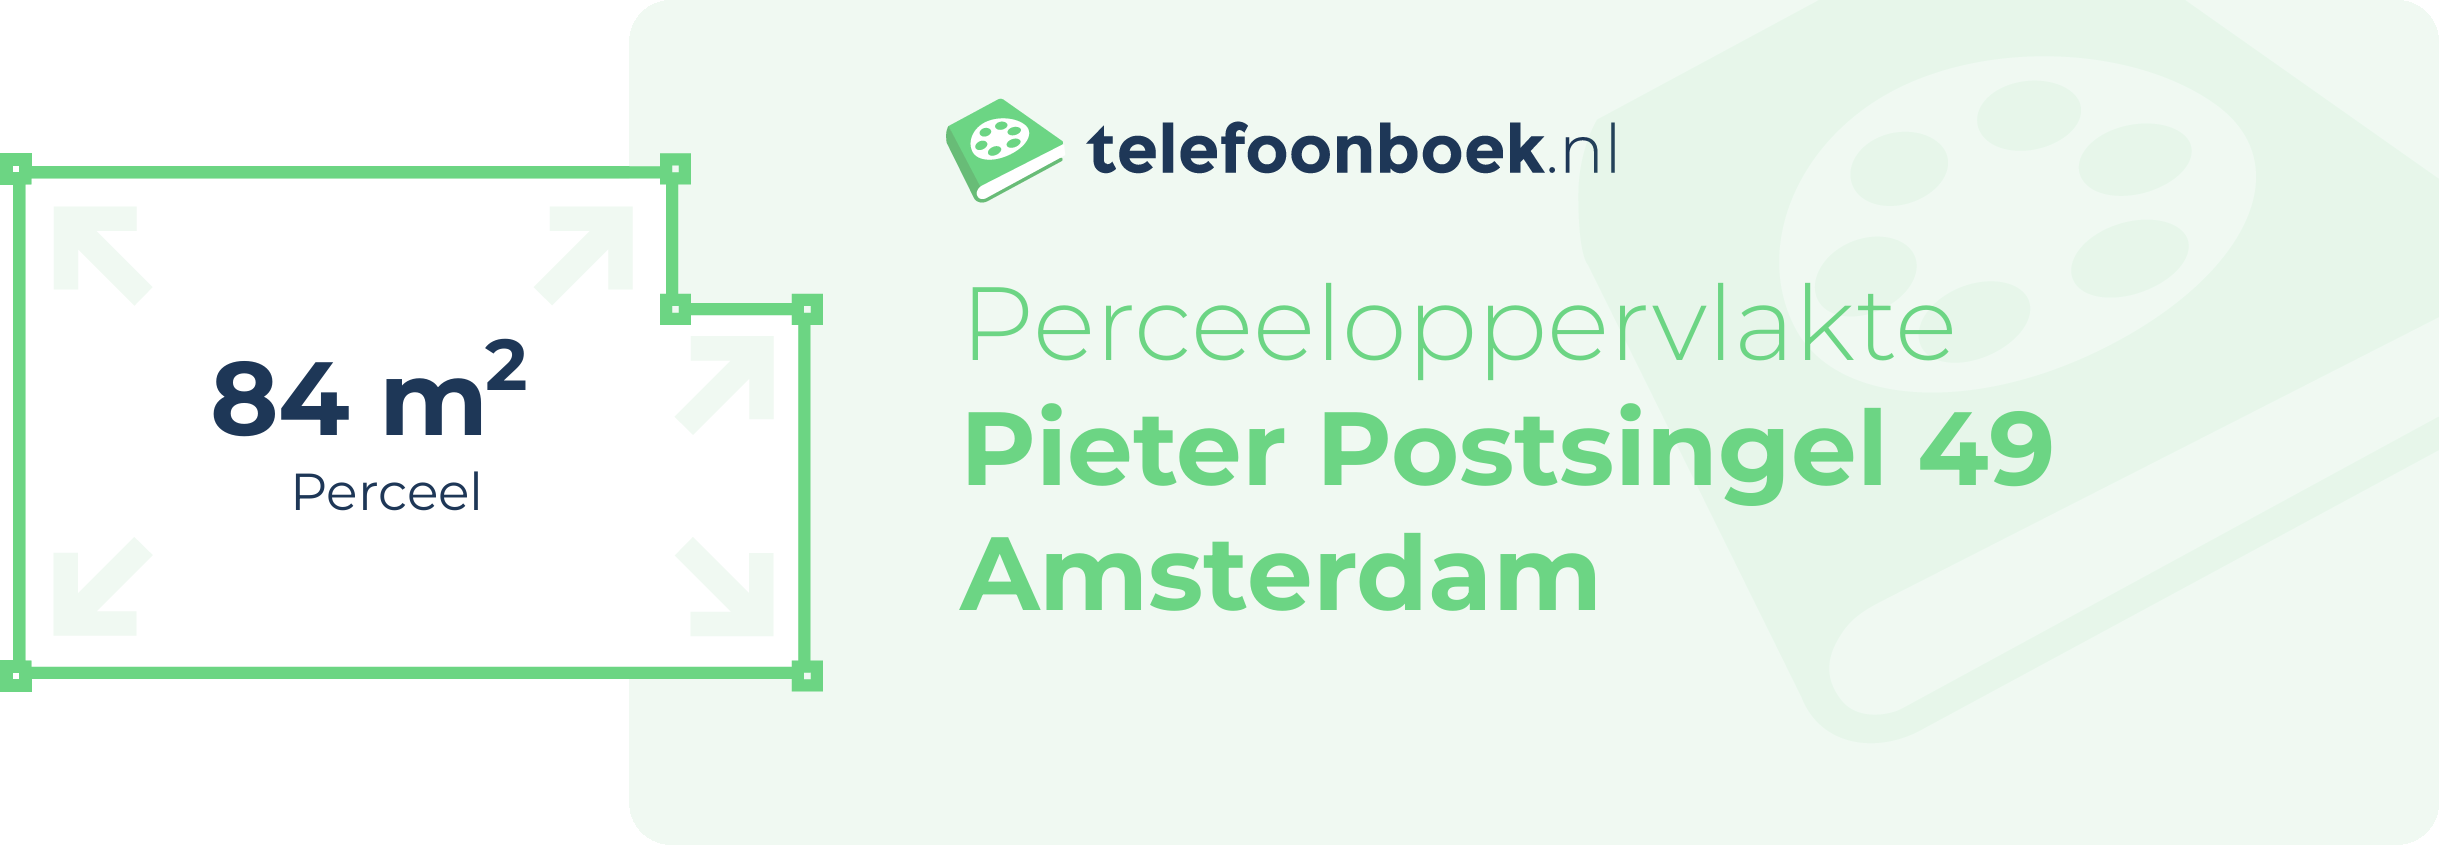 Perceeloppervlakte Pieter Postsingel 49 Amsterdam